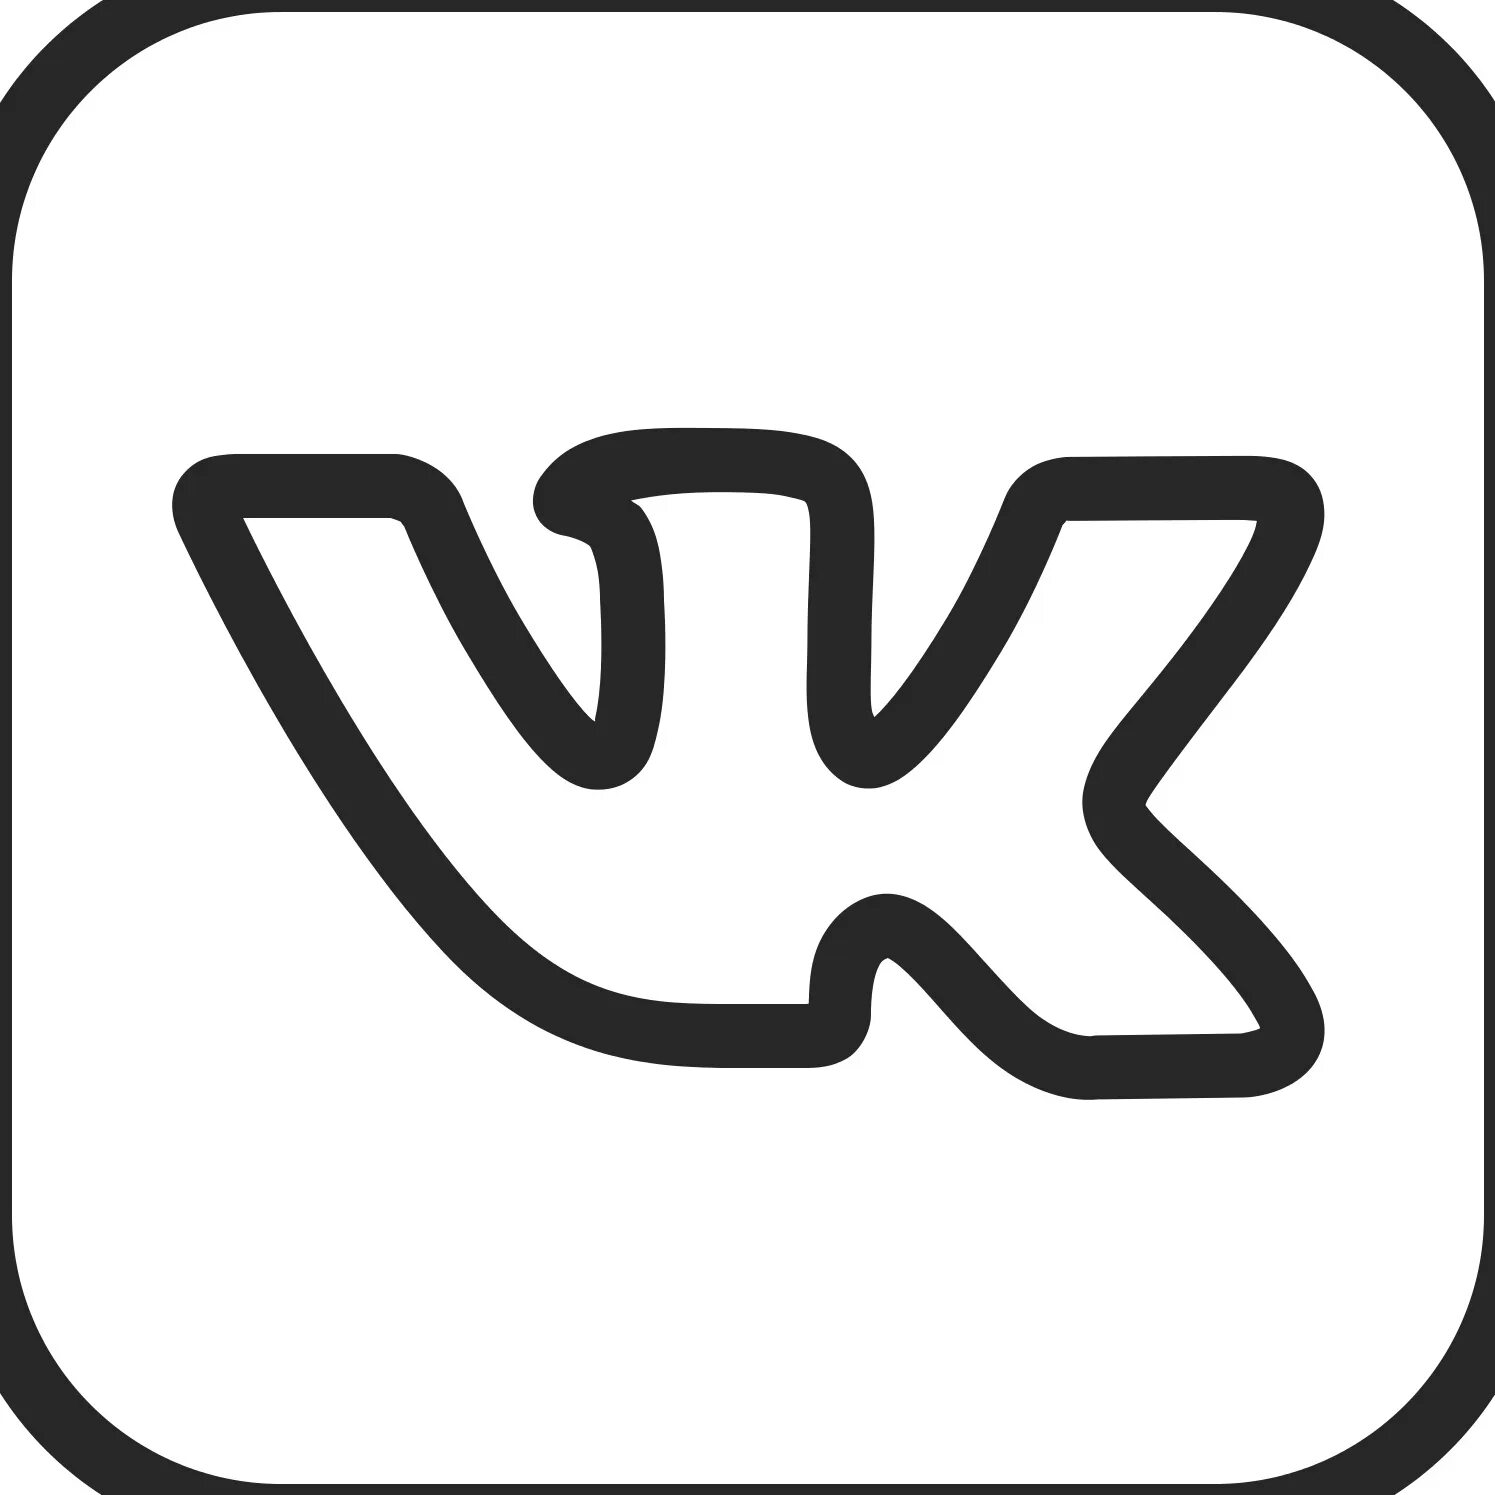 Значок ВК. Значок Вики. OBK логотип. Значок ВК белый. Логотип вк черный